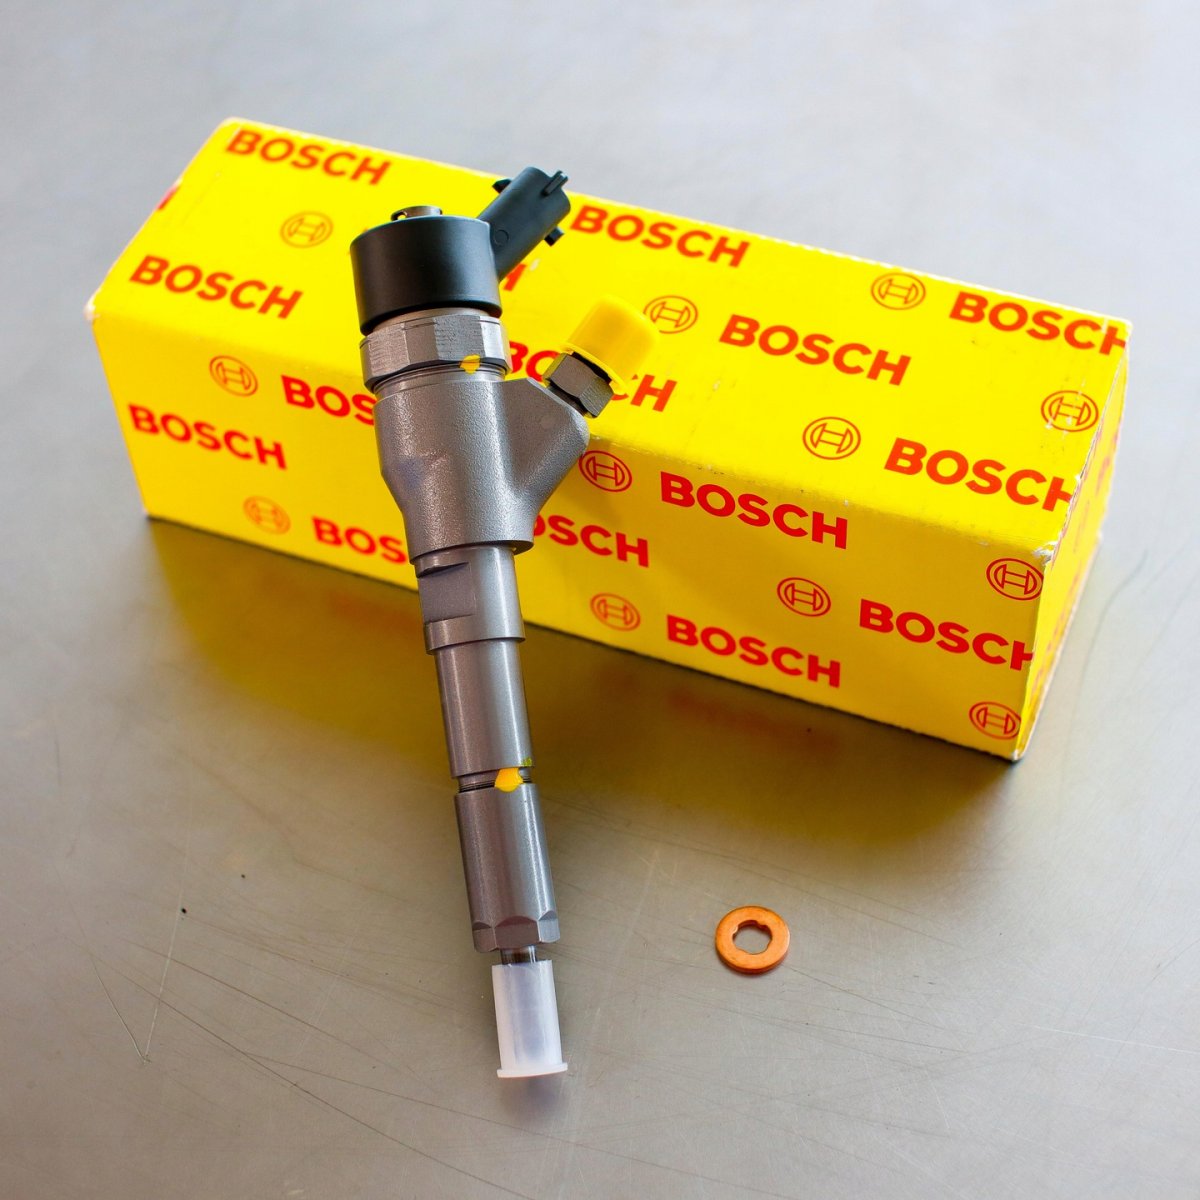 Wtryskiwacz Bosch zregenerowany przygotowany do wysyłki do zamawiającego z gwarancją 24 miesiące w korzystnej cenie